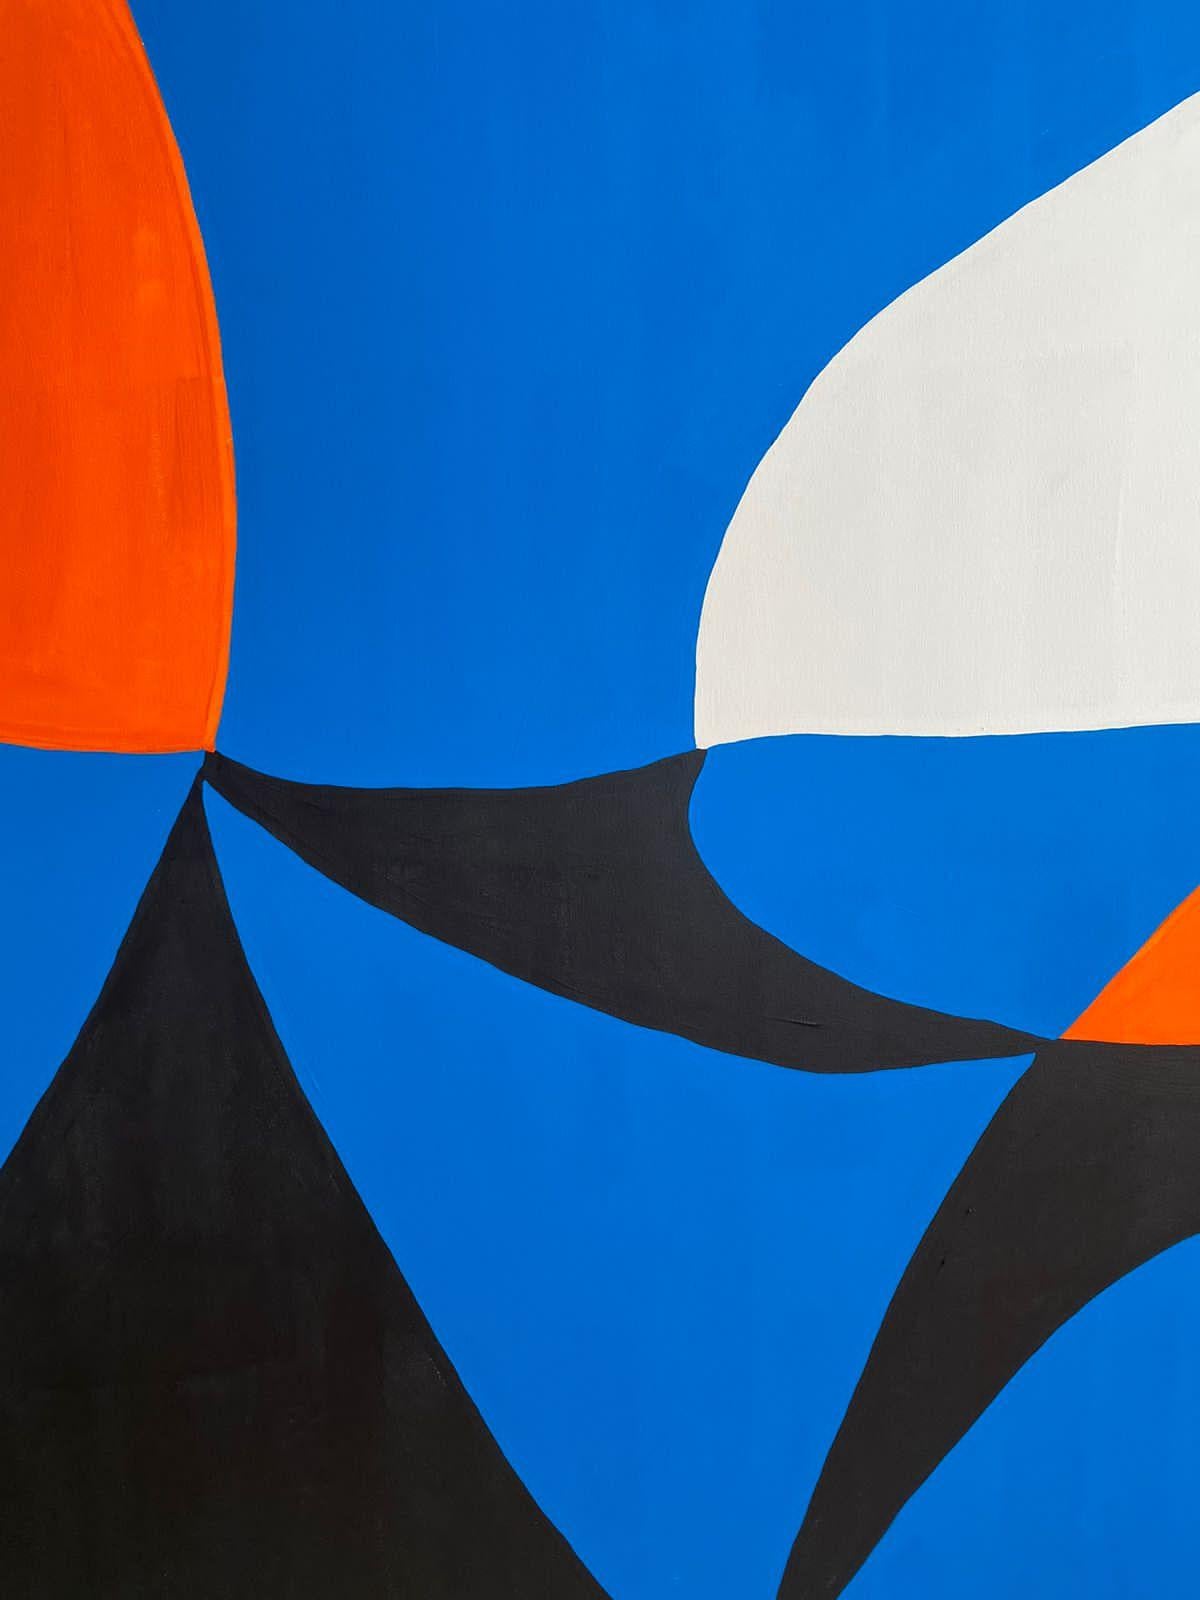 Art contemporain, peinture abstraite
Acrylique sur toile
190x340cm
Signé 
LIVRAISON GRATUITE ROLLE



A propos de l'artiste
Enrique Pichardo (Mexico, 1973) est diplômé de l'Escuela Nacional de Pintura, Escultura y Grabado (ENPEG) 